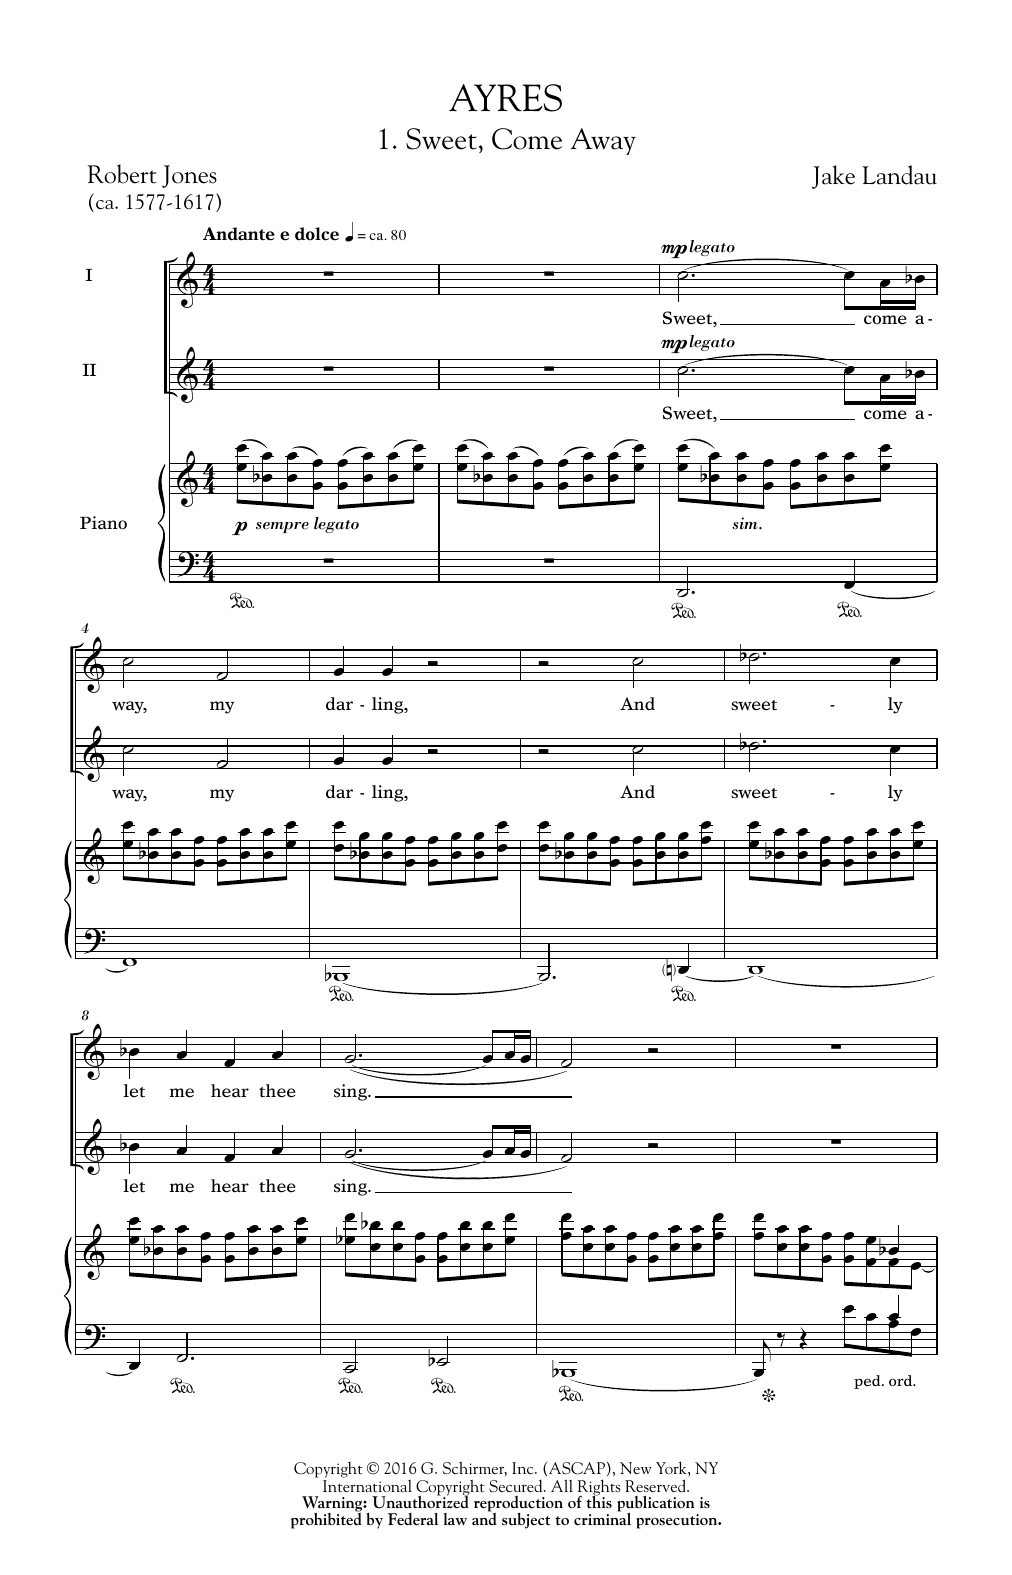 Jake Landau Ayres Sheet Music Notes & Chords for 2-Part Choir - Download or Print PDF